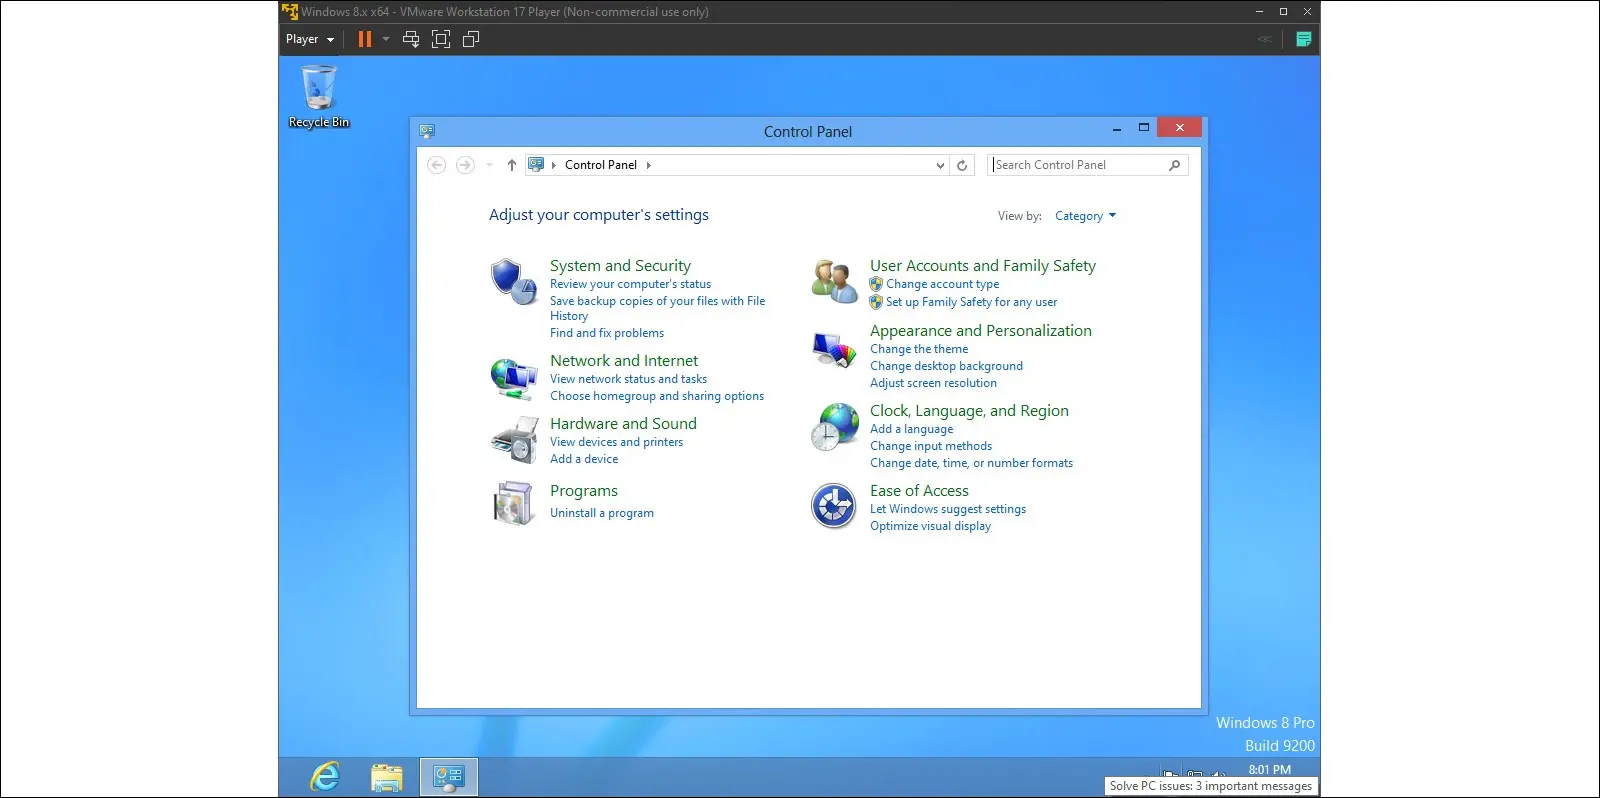 صور Windows 8 على جهاز افتراضي ، تعرض لوحة التحكم